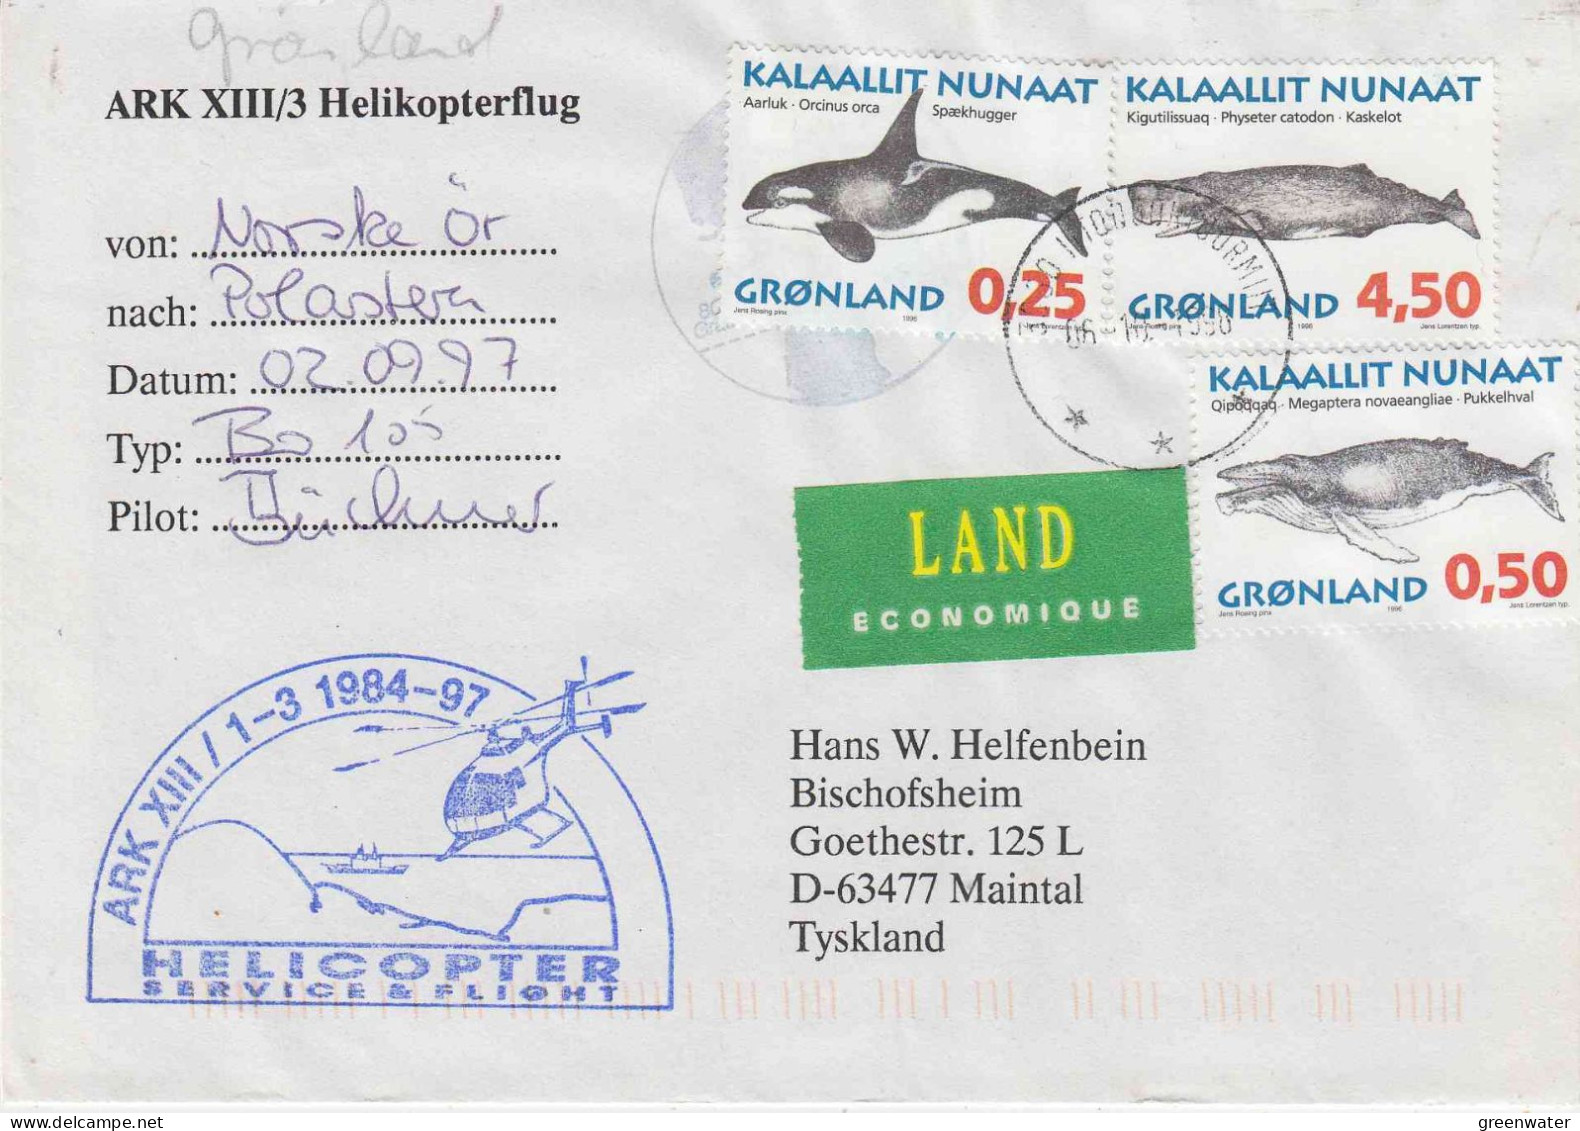 Greenland Heli Flight Norske Or To Polarstern 02.09.1997 (JS151) - Polar Flights